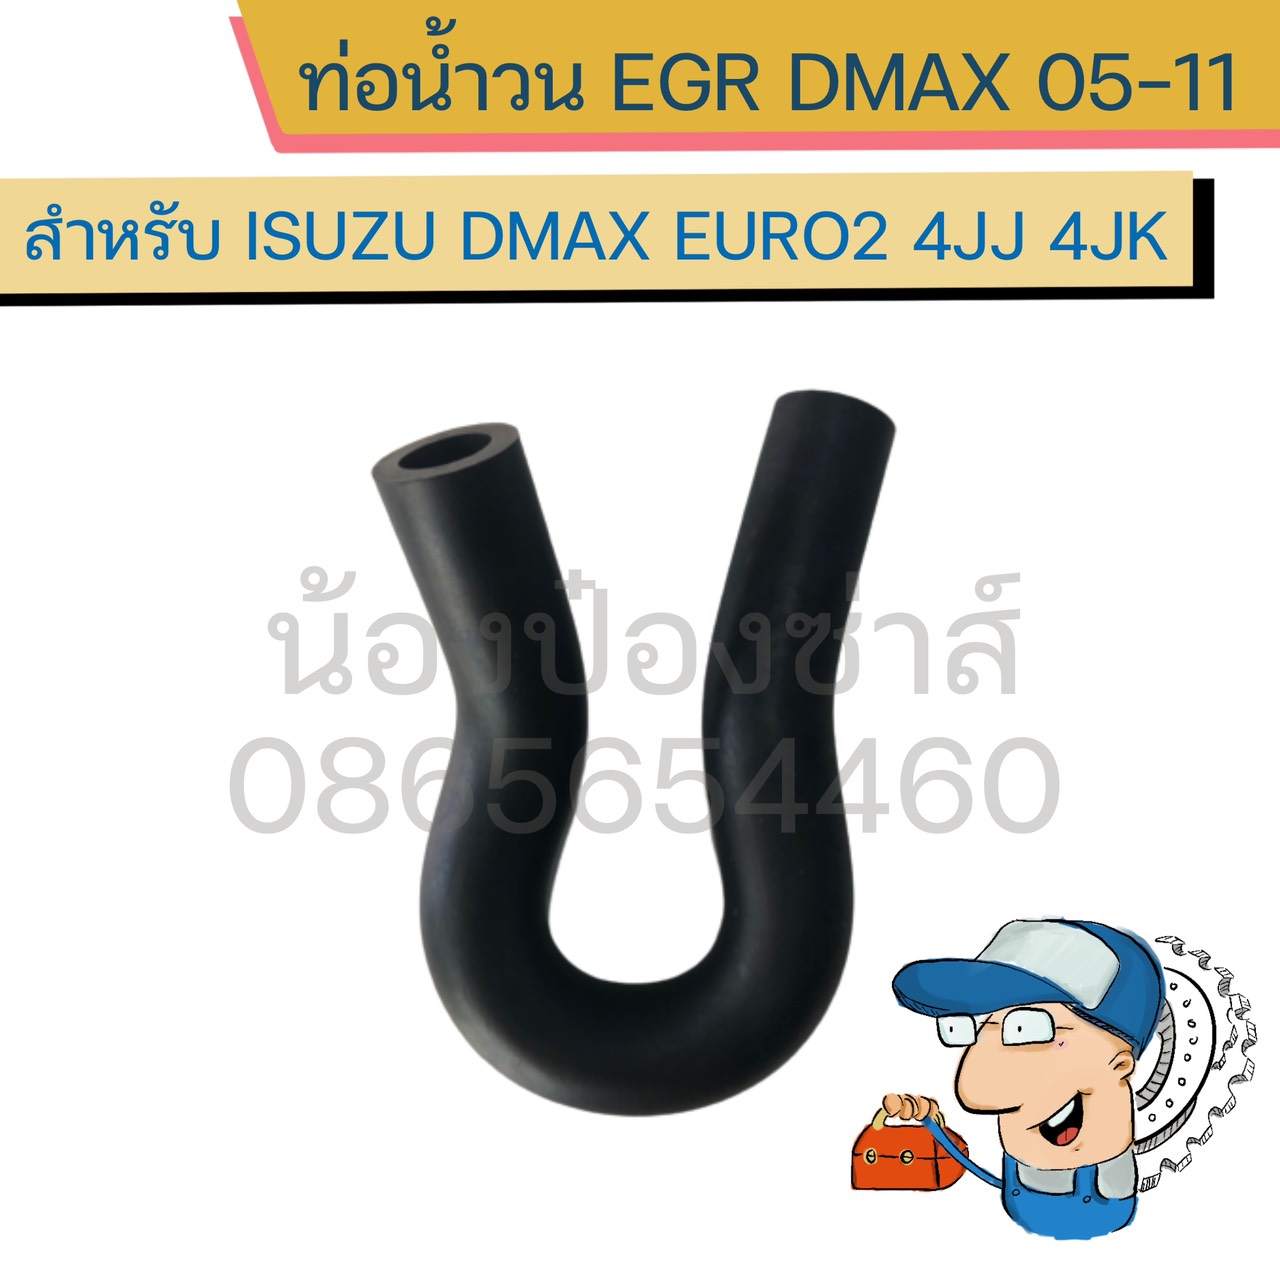 ท่อน้ำวน EGR Isuzu Dmax Euro2